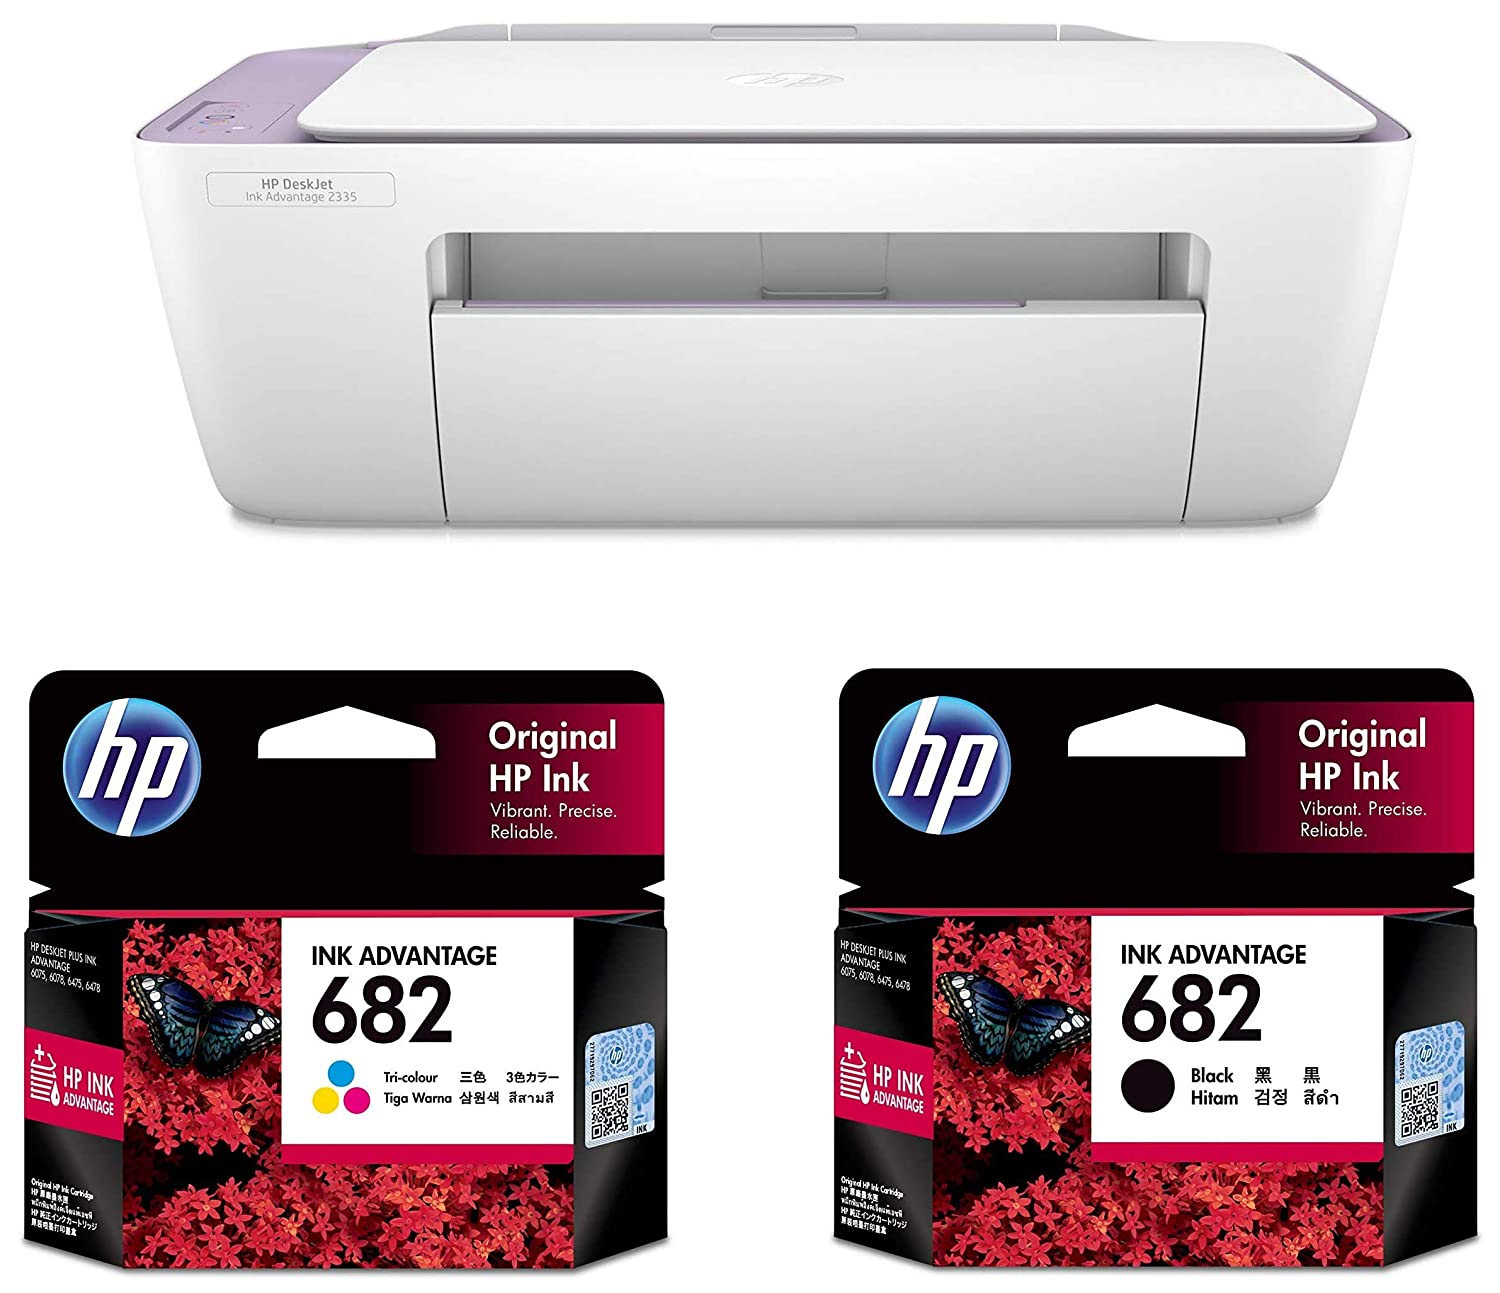 รูปภาพเพิ่มเติมเกี่ยวกับ เครื่องพิมพ์ เครื่องปริ้นท์  HP DeskJet All-in-One Printer ปริ้นท์ สแกน ถ่ายเอกสาร พร้อมหมึก1ชุด อุปกรณ์ครบ ใช้งานได้เลย/ hp2335 2337